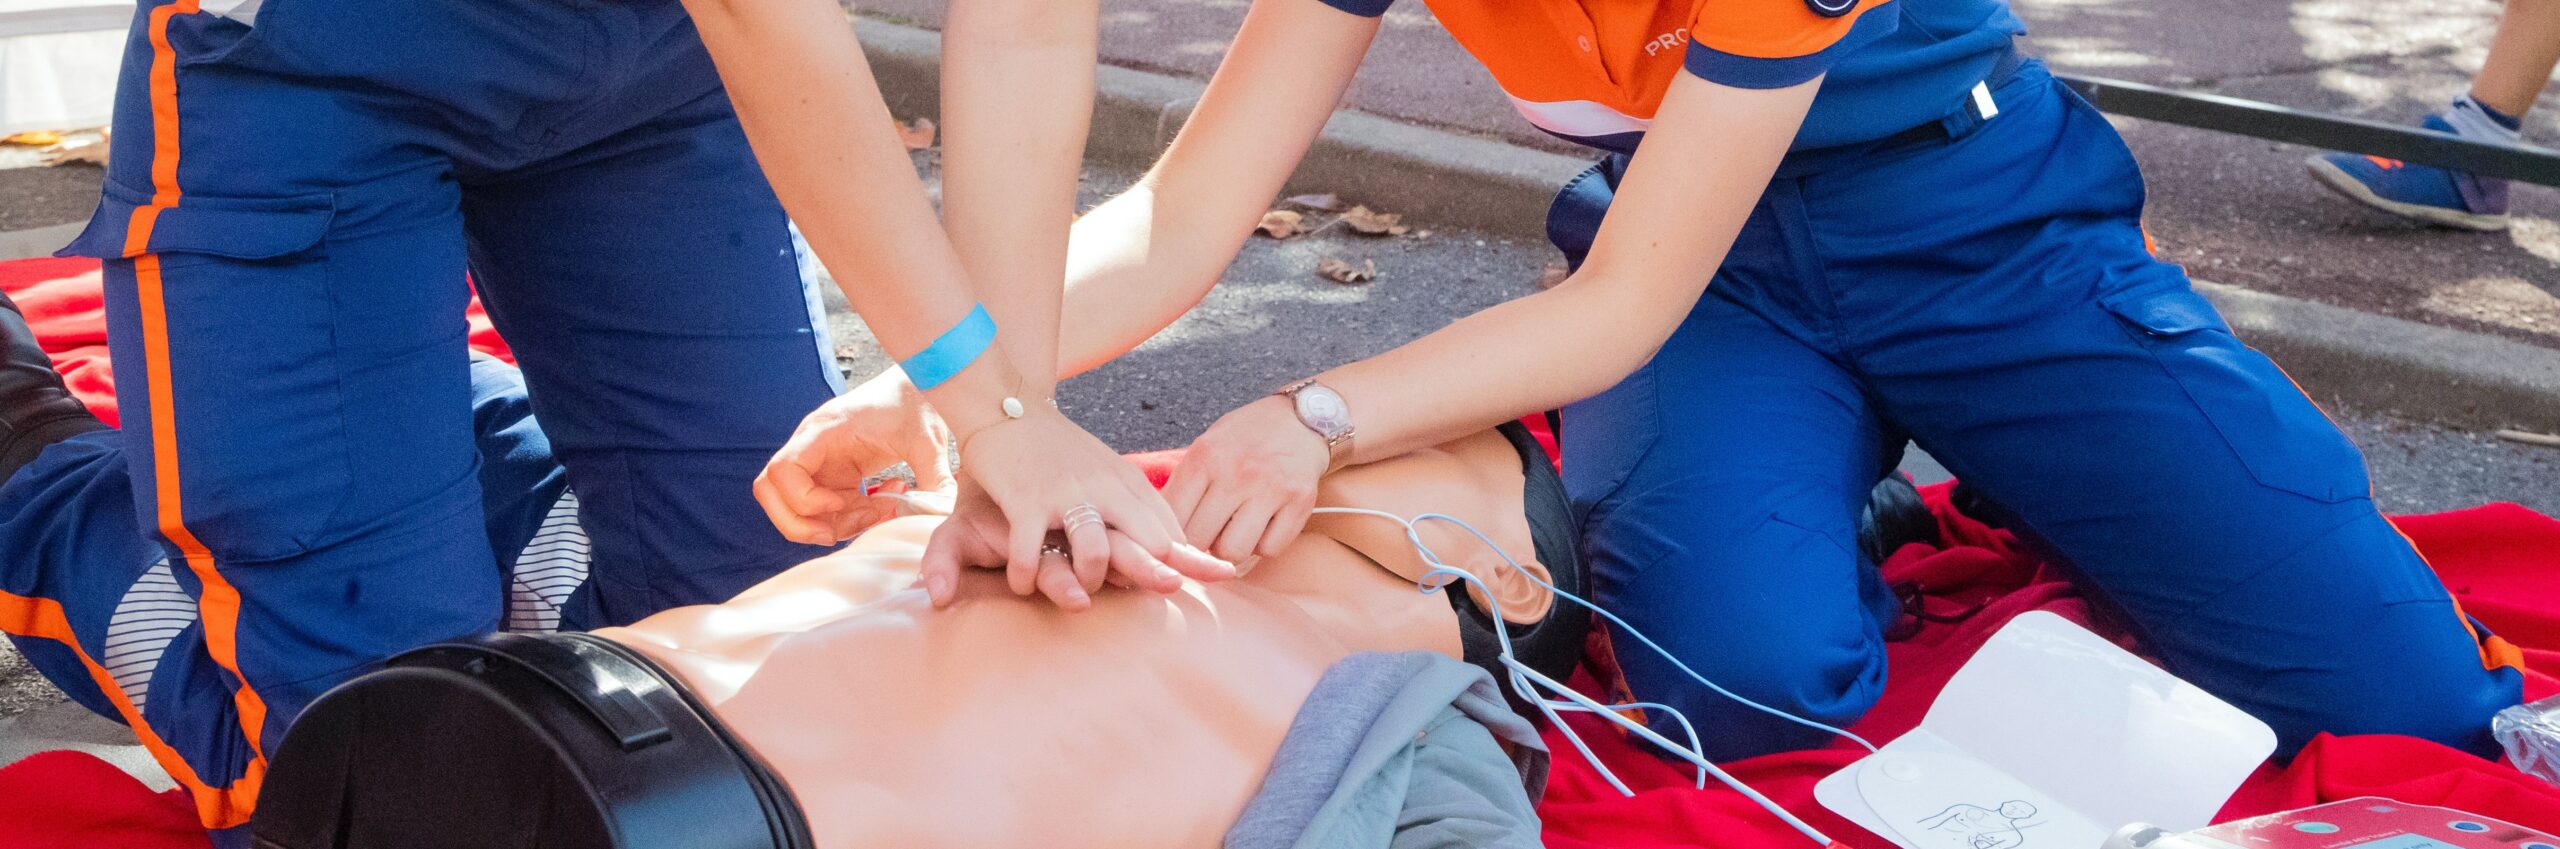 Deux secouristes protection civile faisant un massage cardiaque sur un mannequin